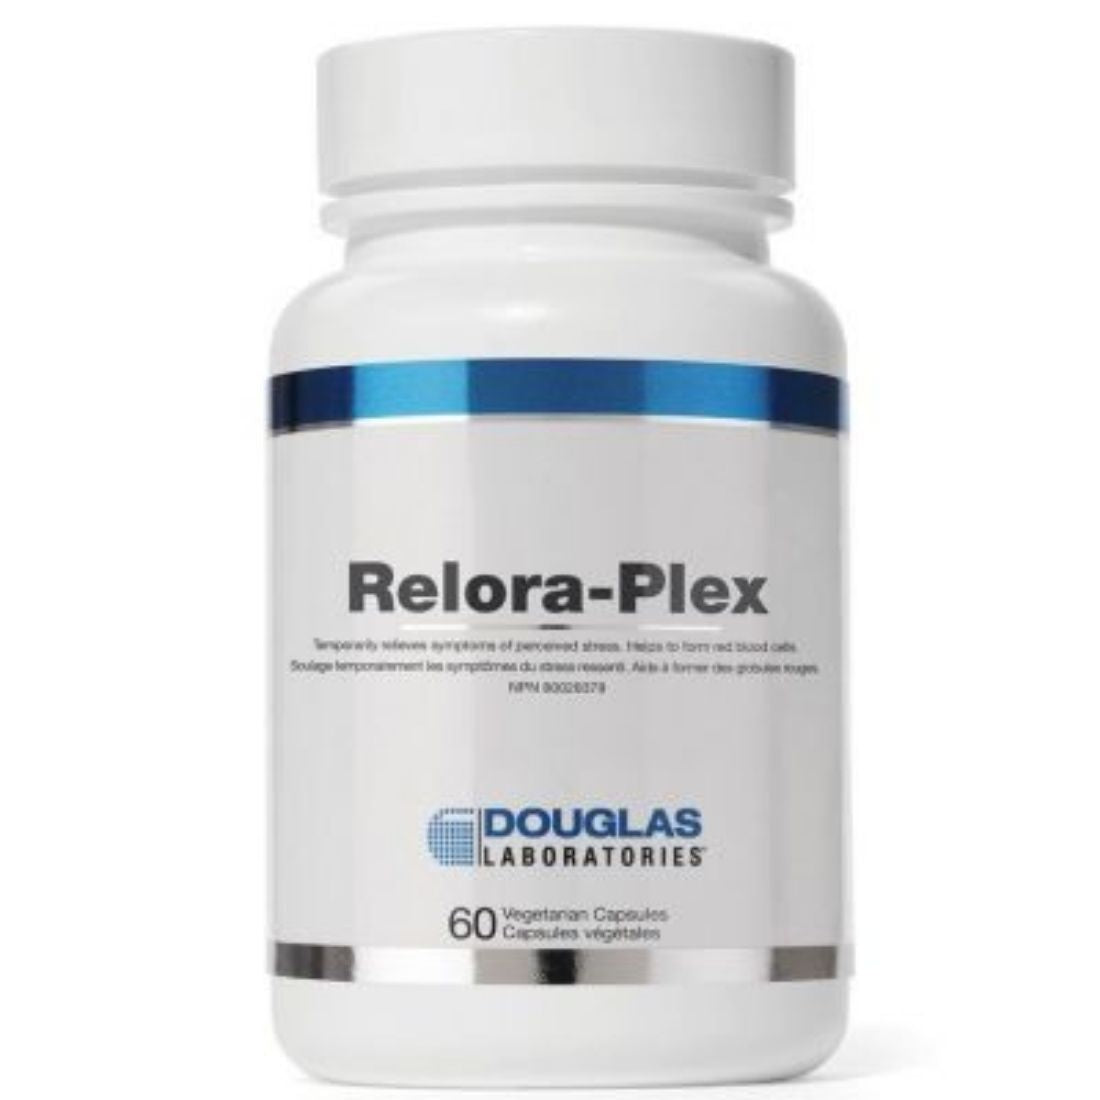 Douglas Laboratories Relora-Plex 60 Capsules